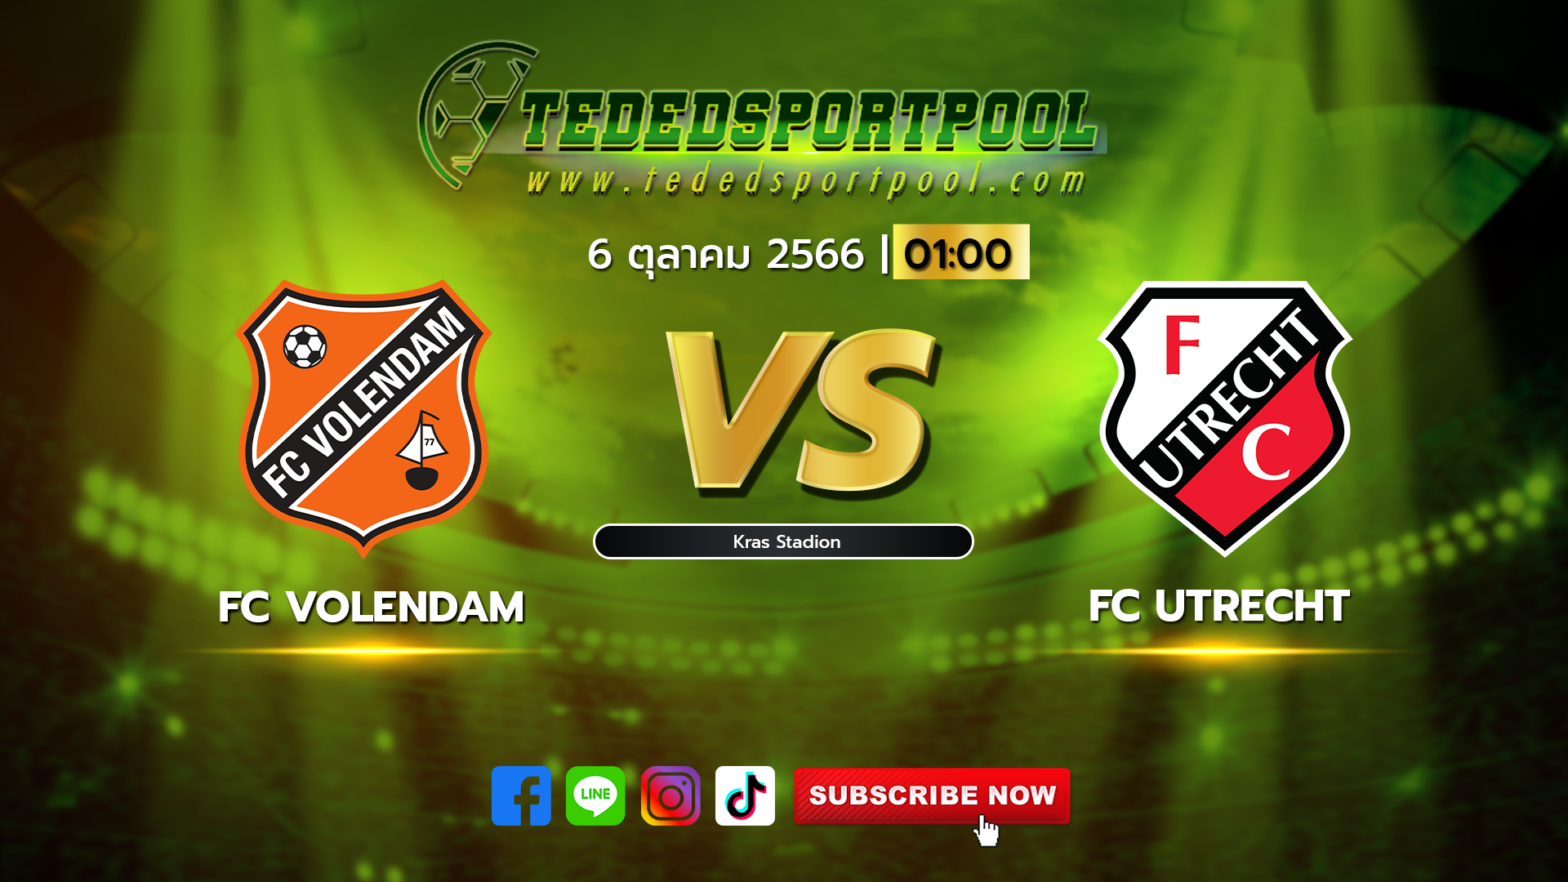 FC Volendam vs FC Utrecht